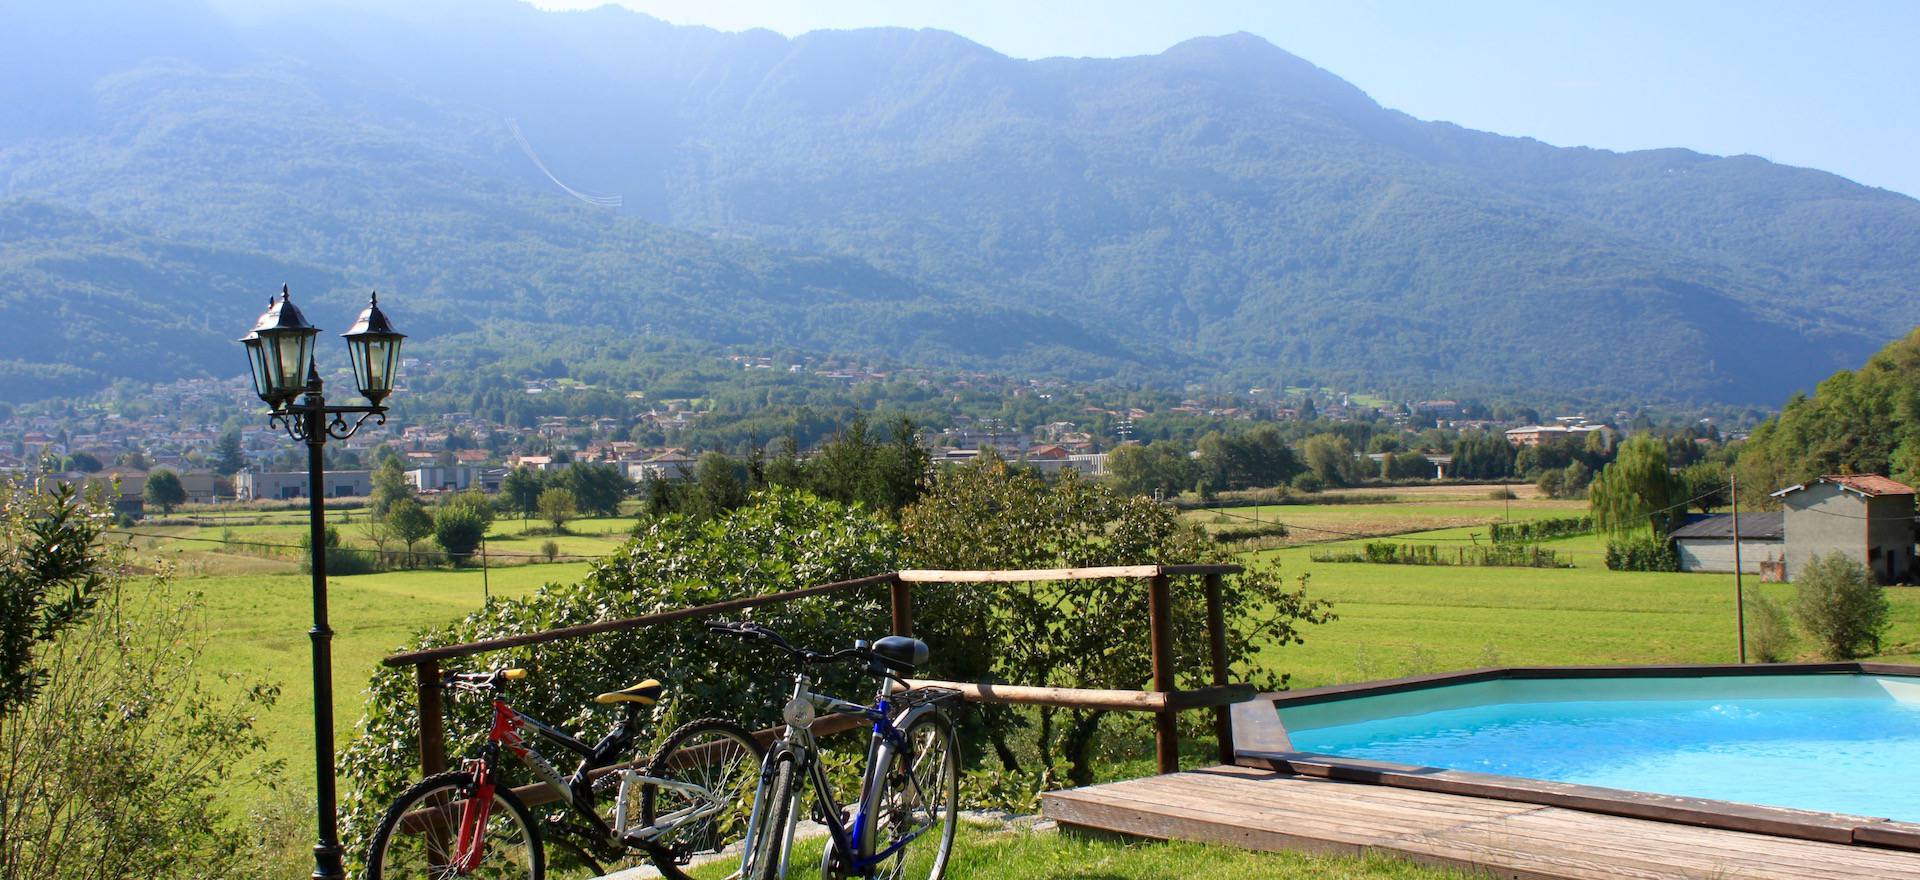 Agriturismo Lago di Como e lago di Garda Caratteristico agriturismo nei pressi del lago di Como